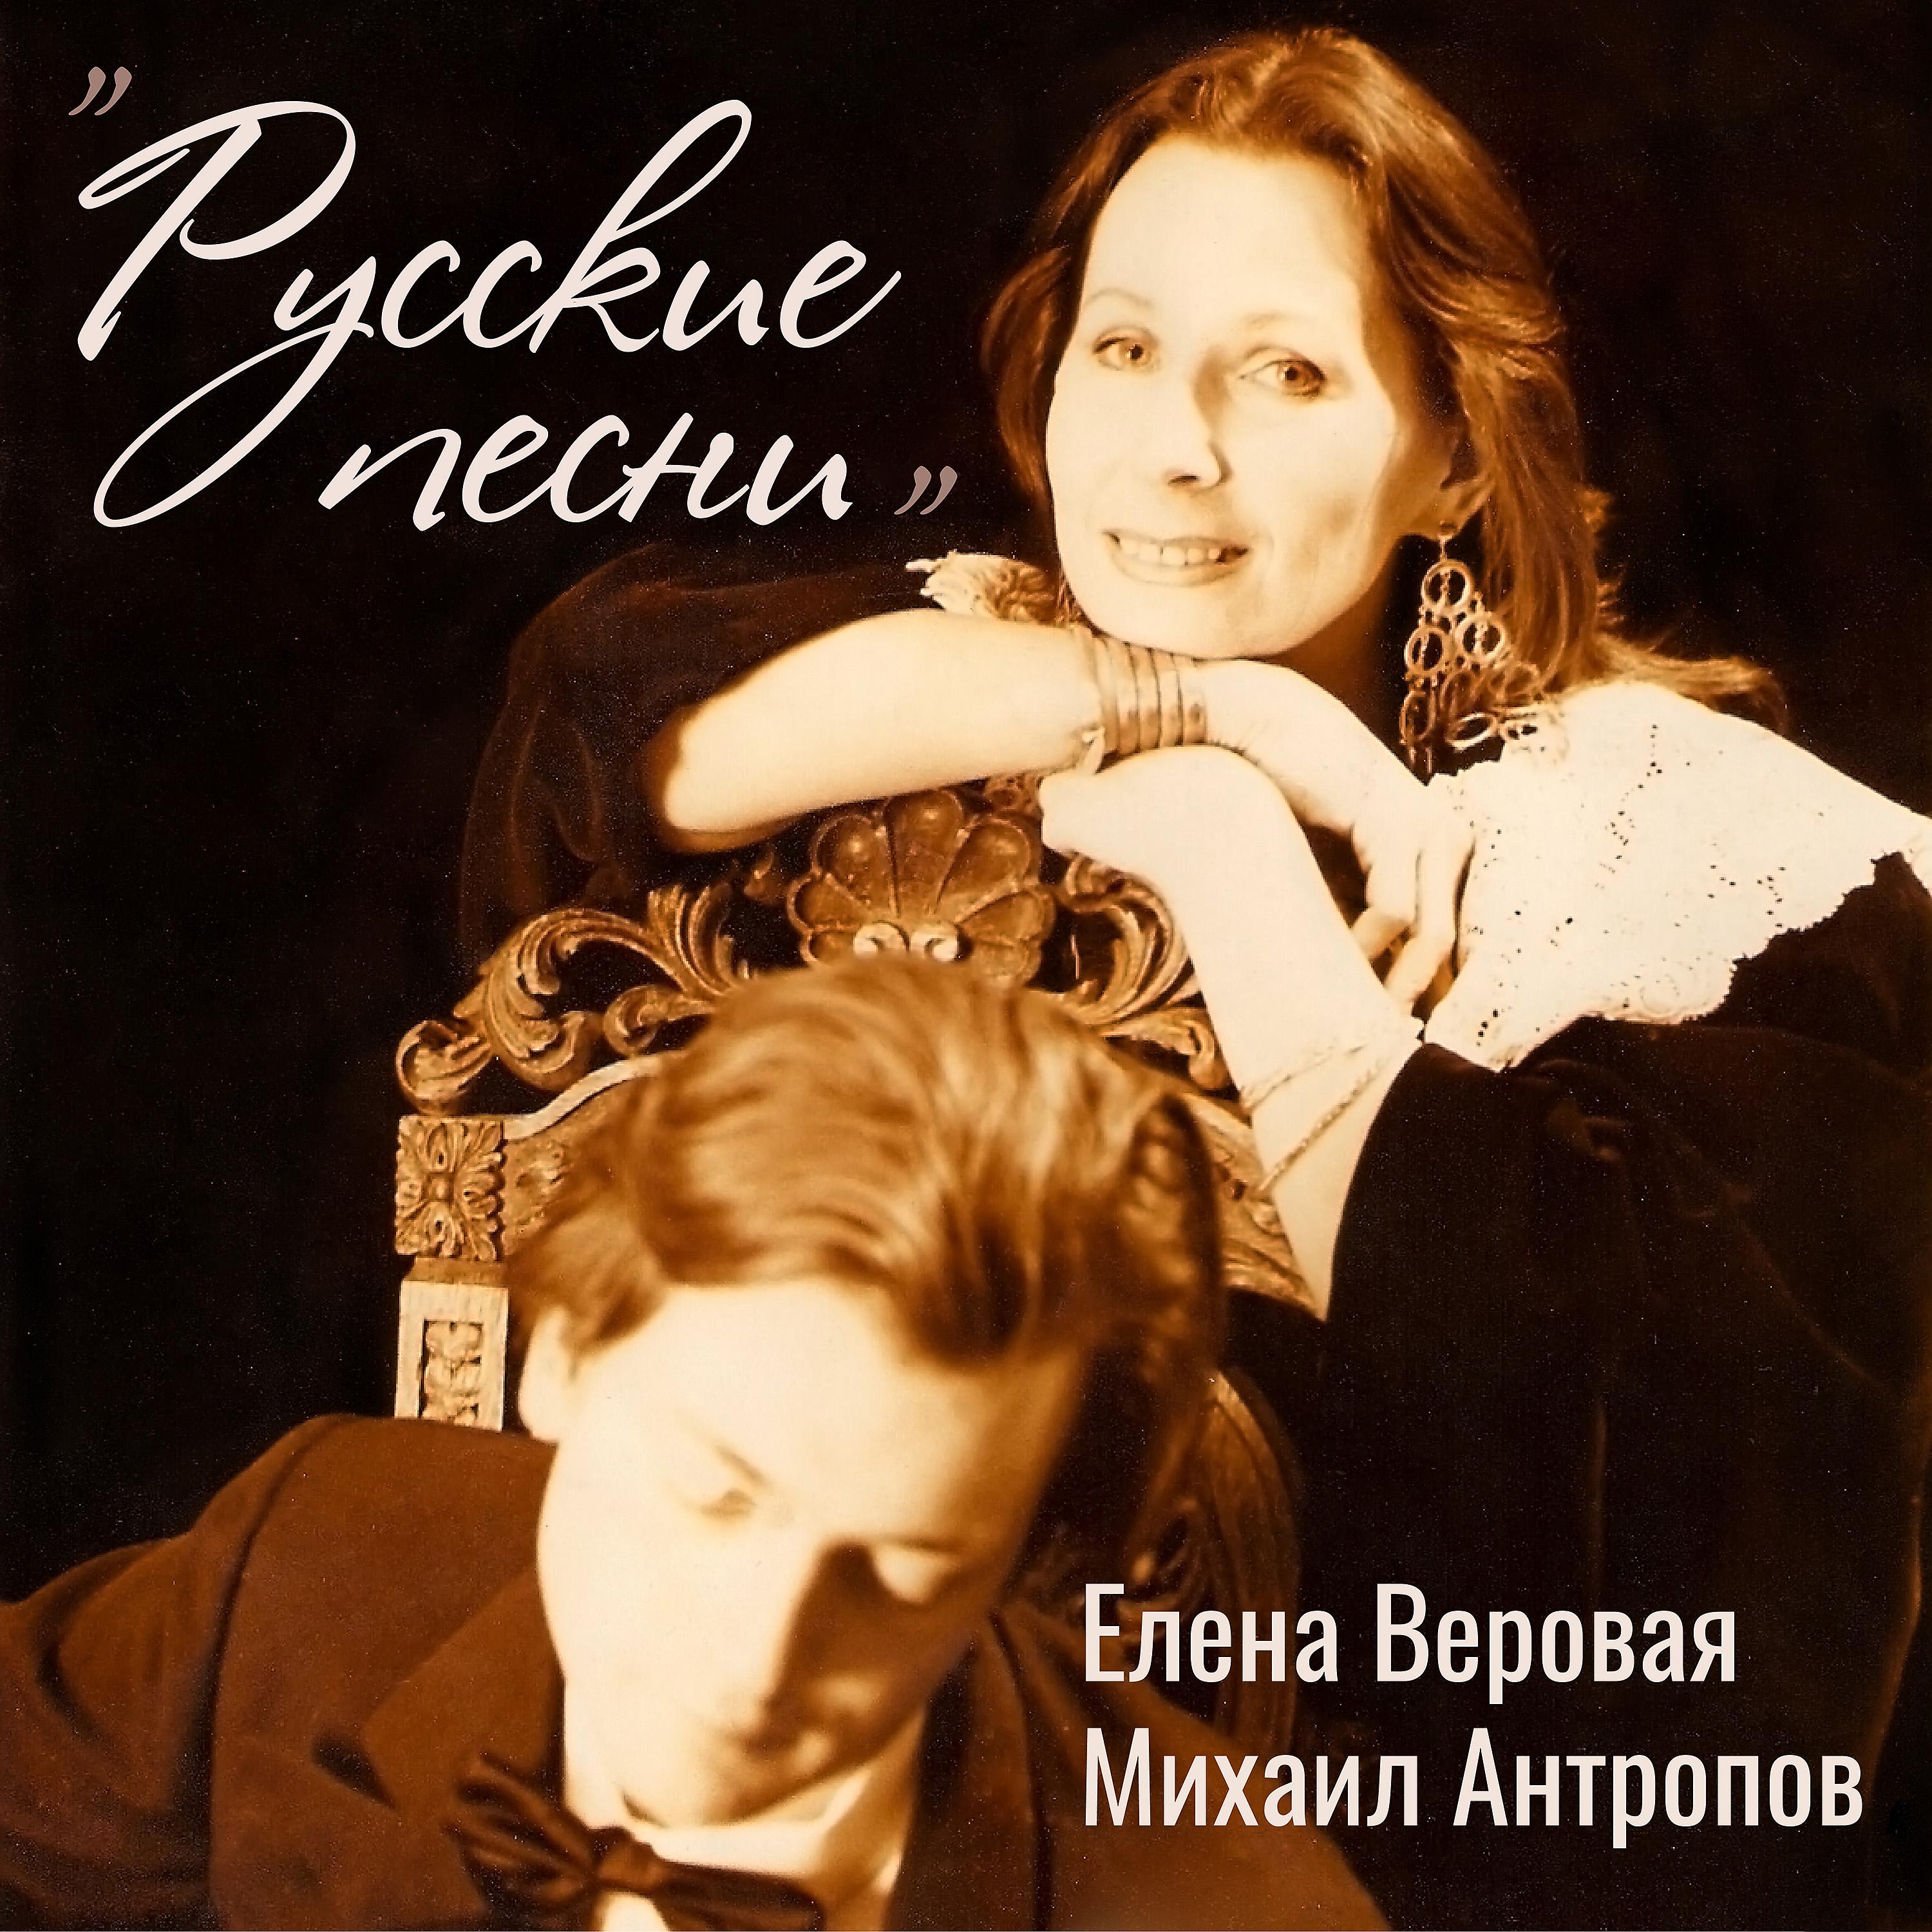 Постер альбома Русские песни